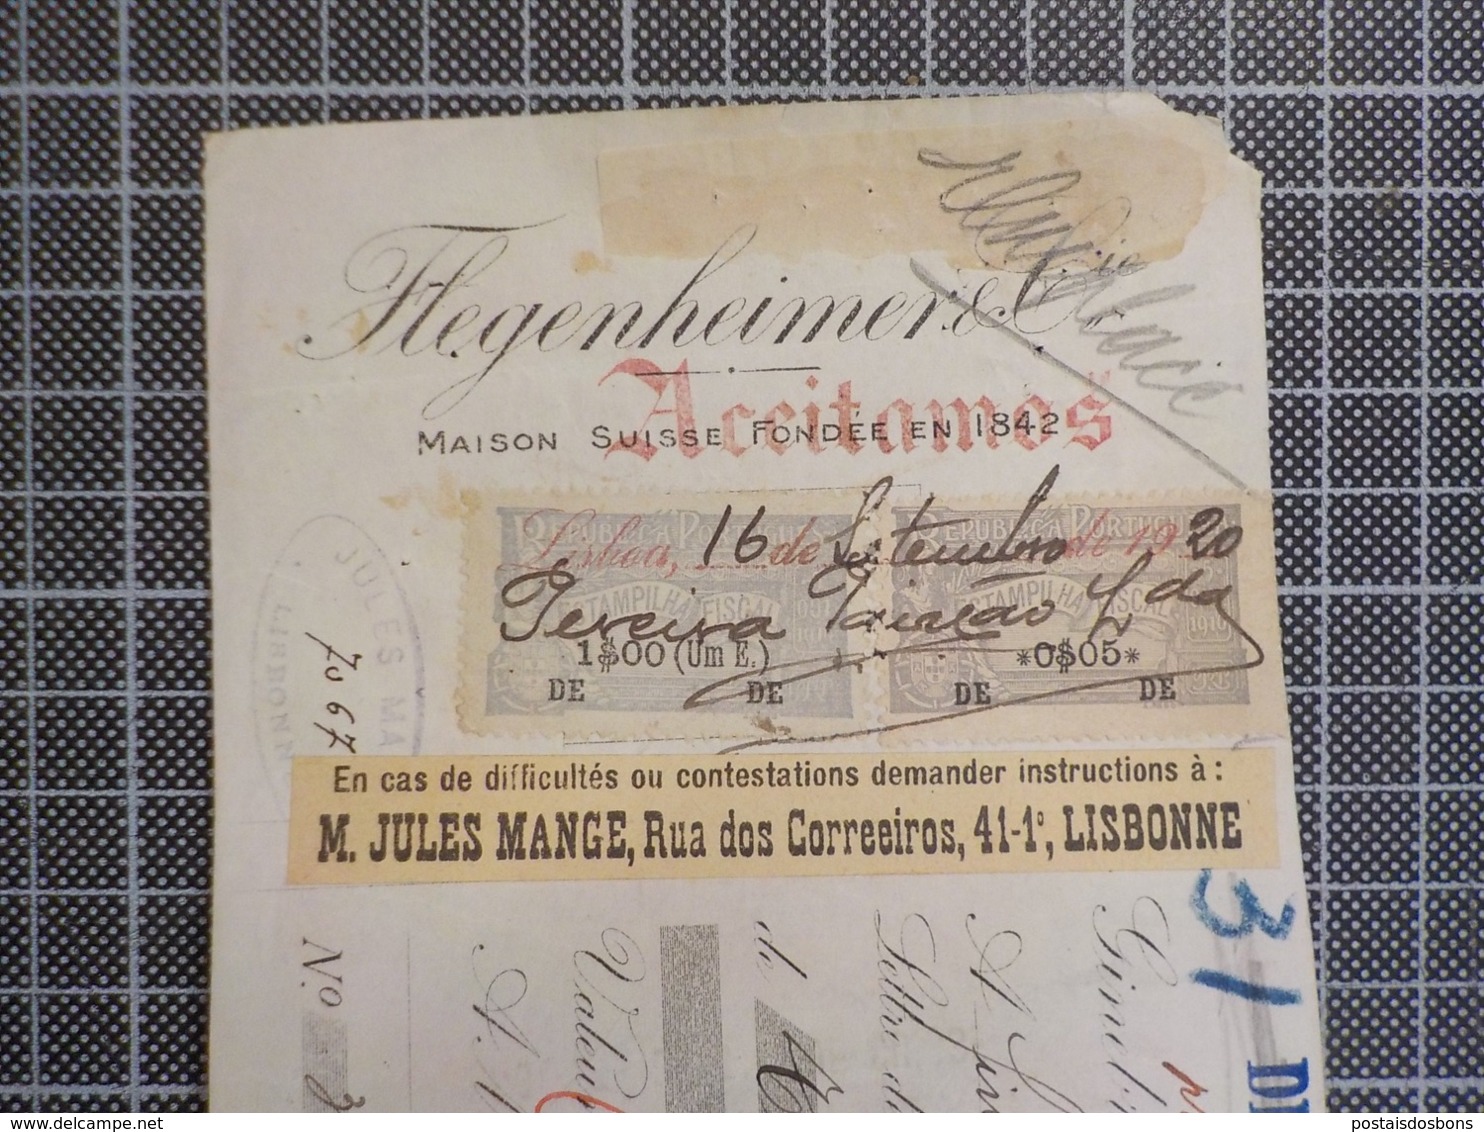 Cx 9) Portugal Suisse Lettre De Change Banco Nacional Ultramarino 1920 M. Jules Mange - Cheques En Traveller's Cheques